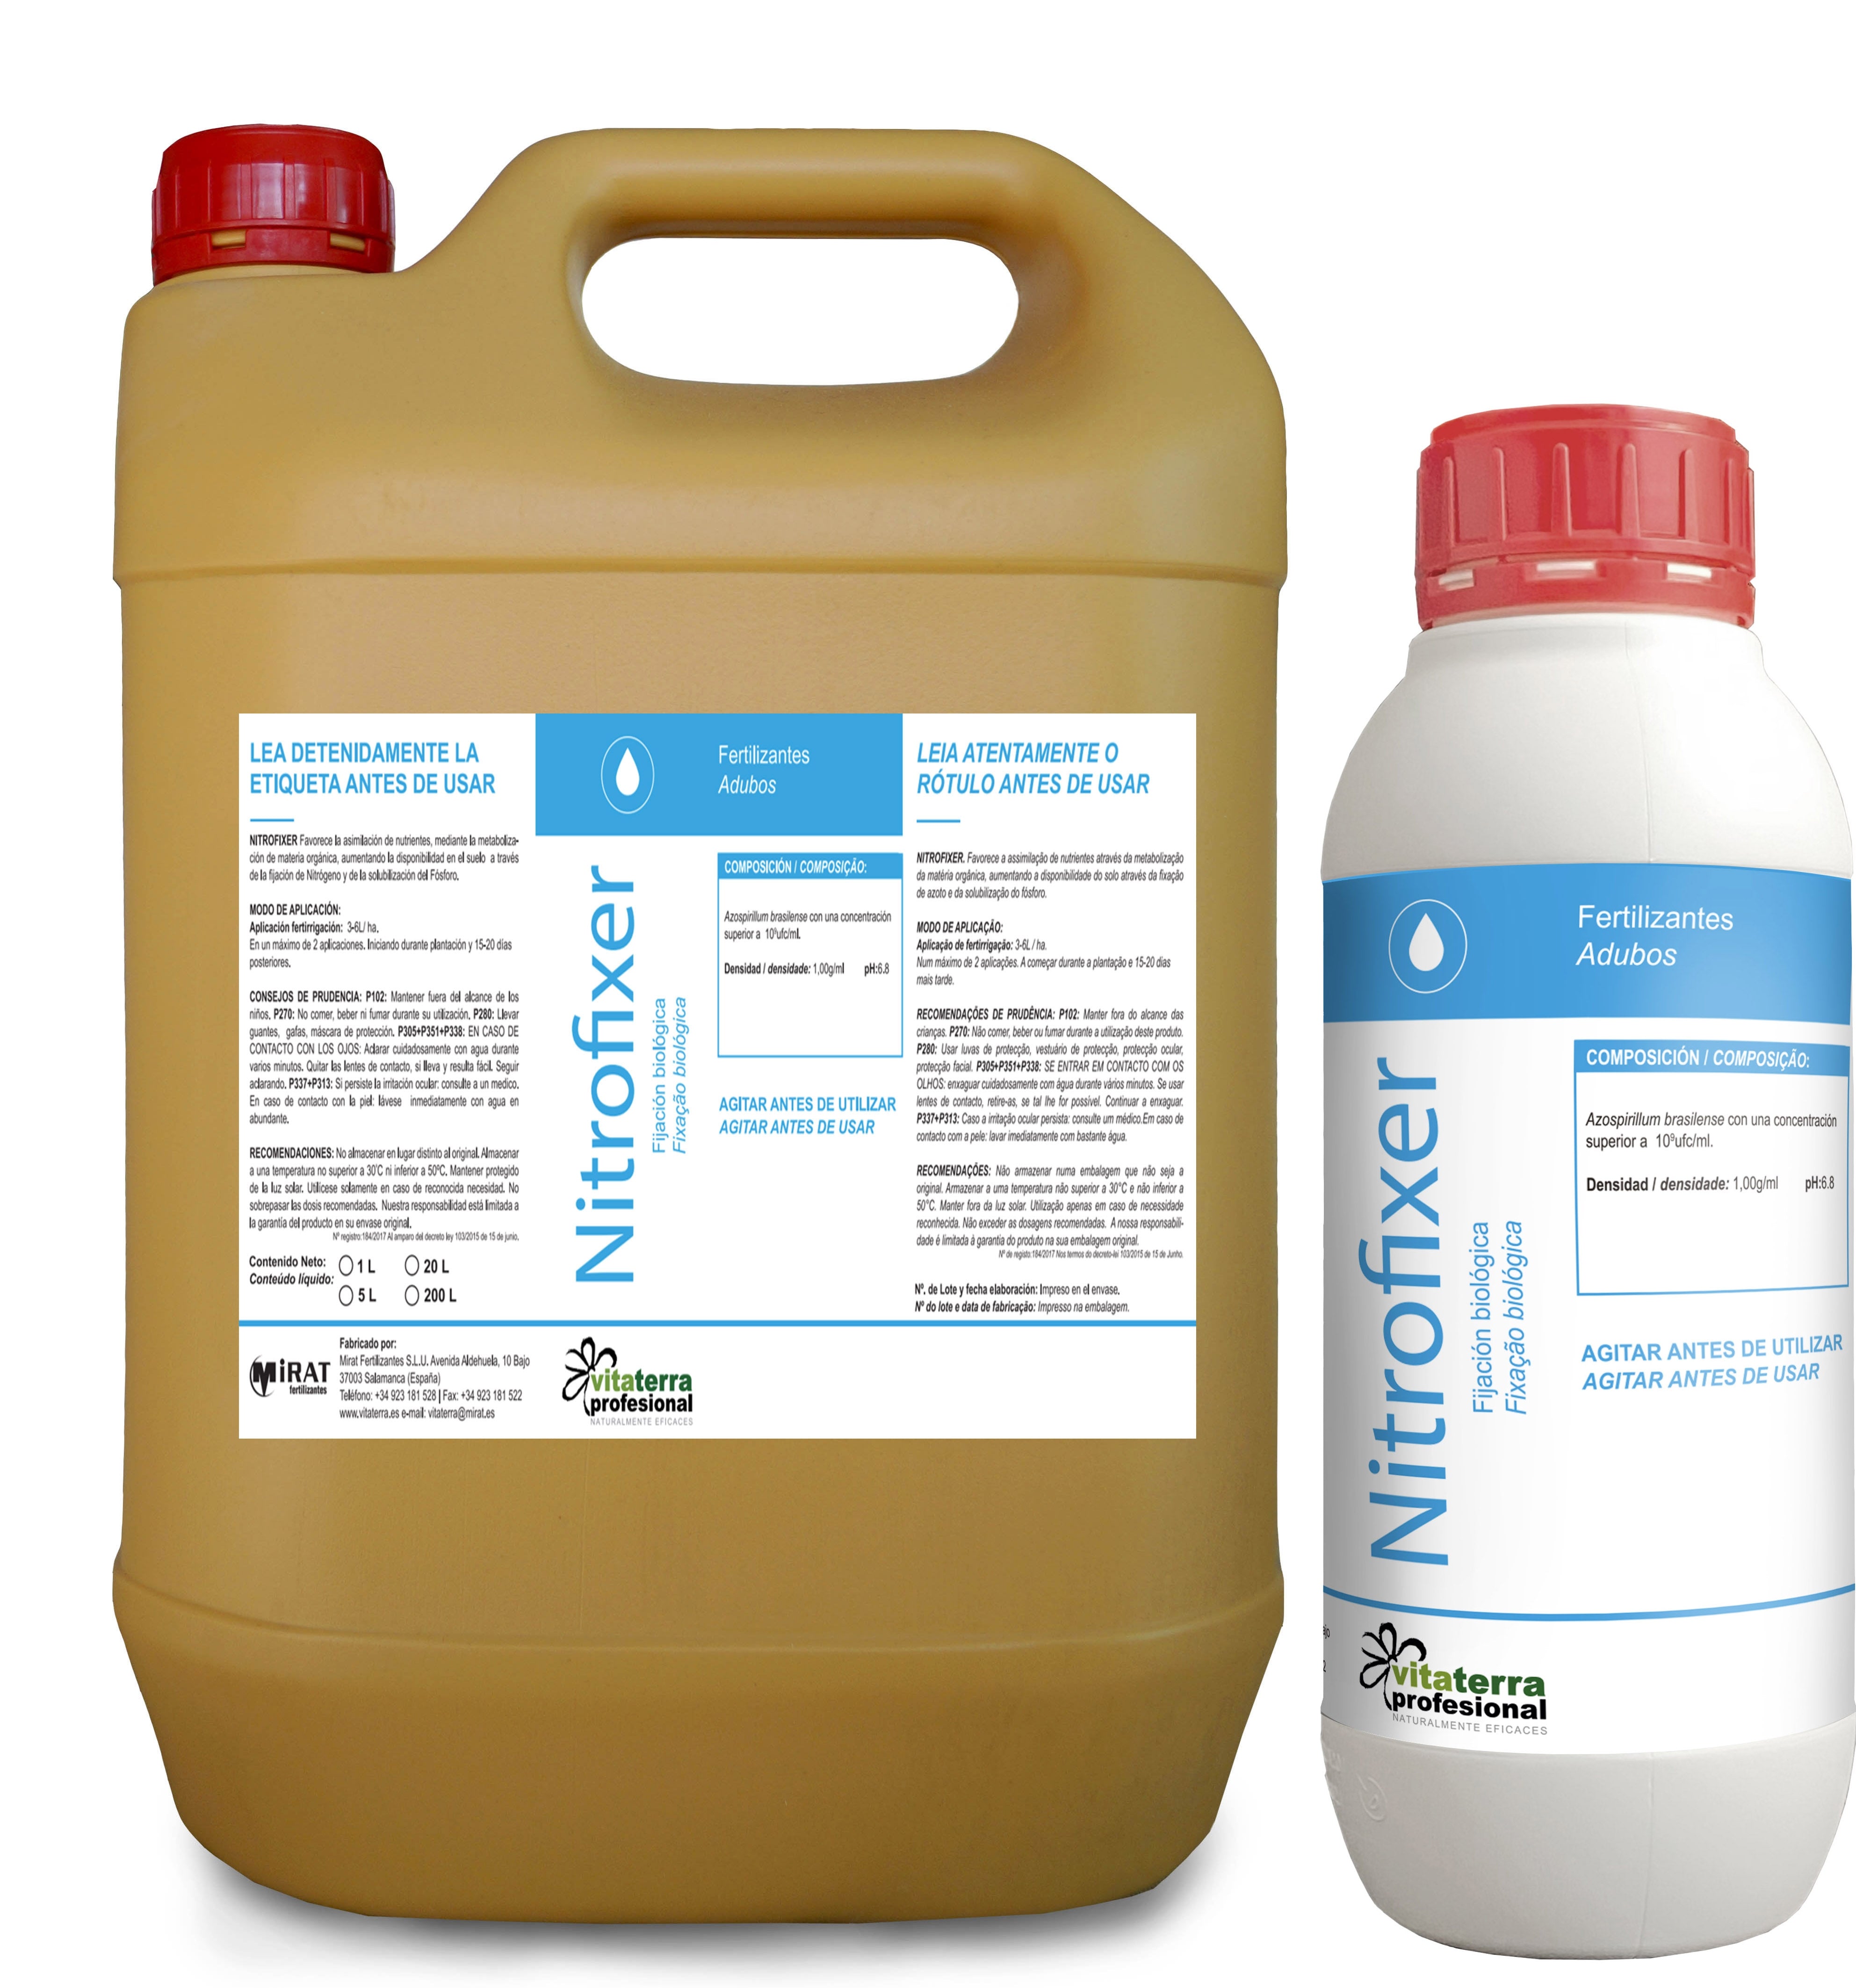 NitroFixer - Microorganismos fijadores de nitrógeno y solubilizadores de fósforo